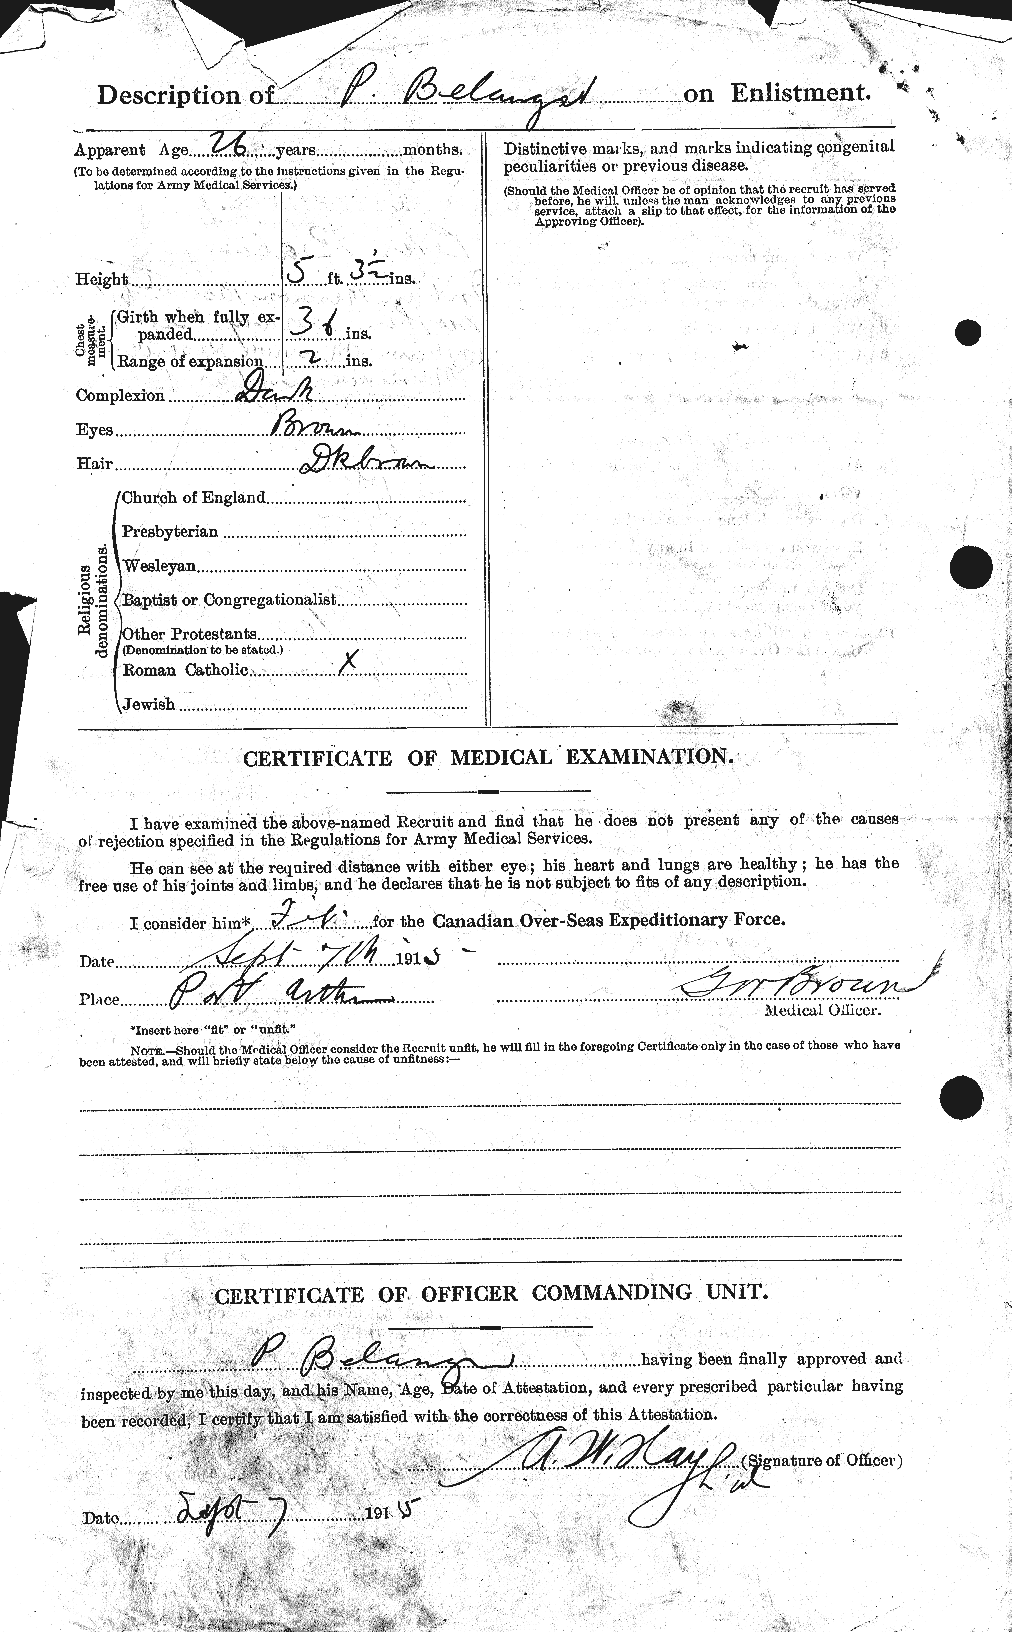 Dossiers du Personnel de la Première Guerre mondiale - CEC 232673b